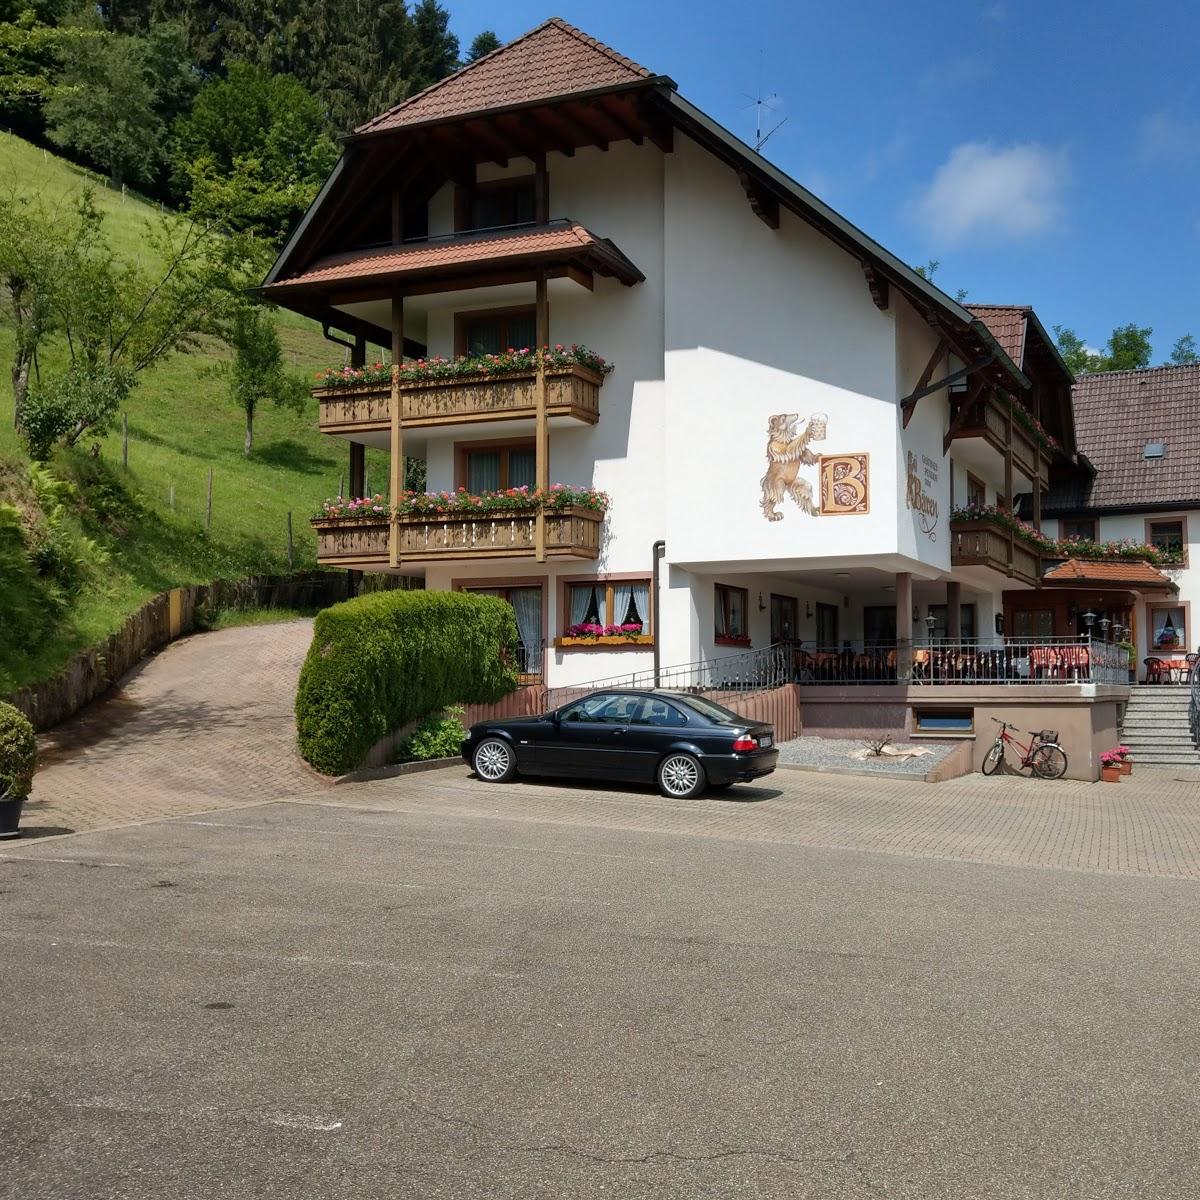 Restaurant "Bären Siegelau" in Gutach im Breisgau